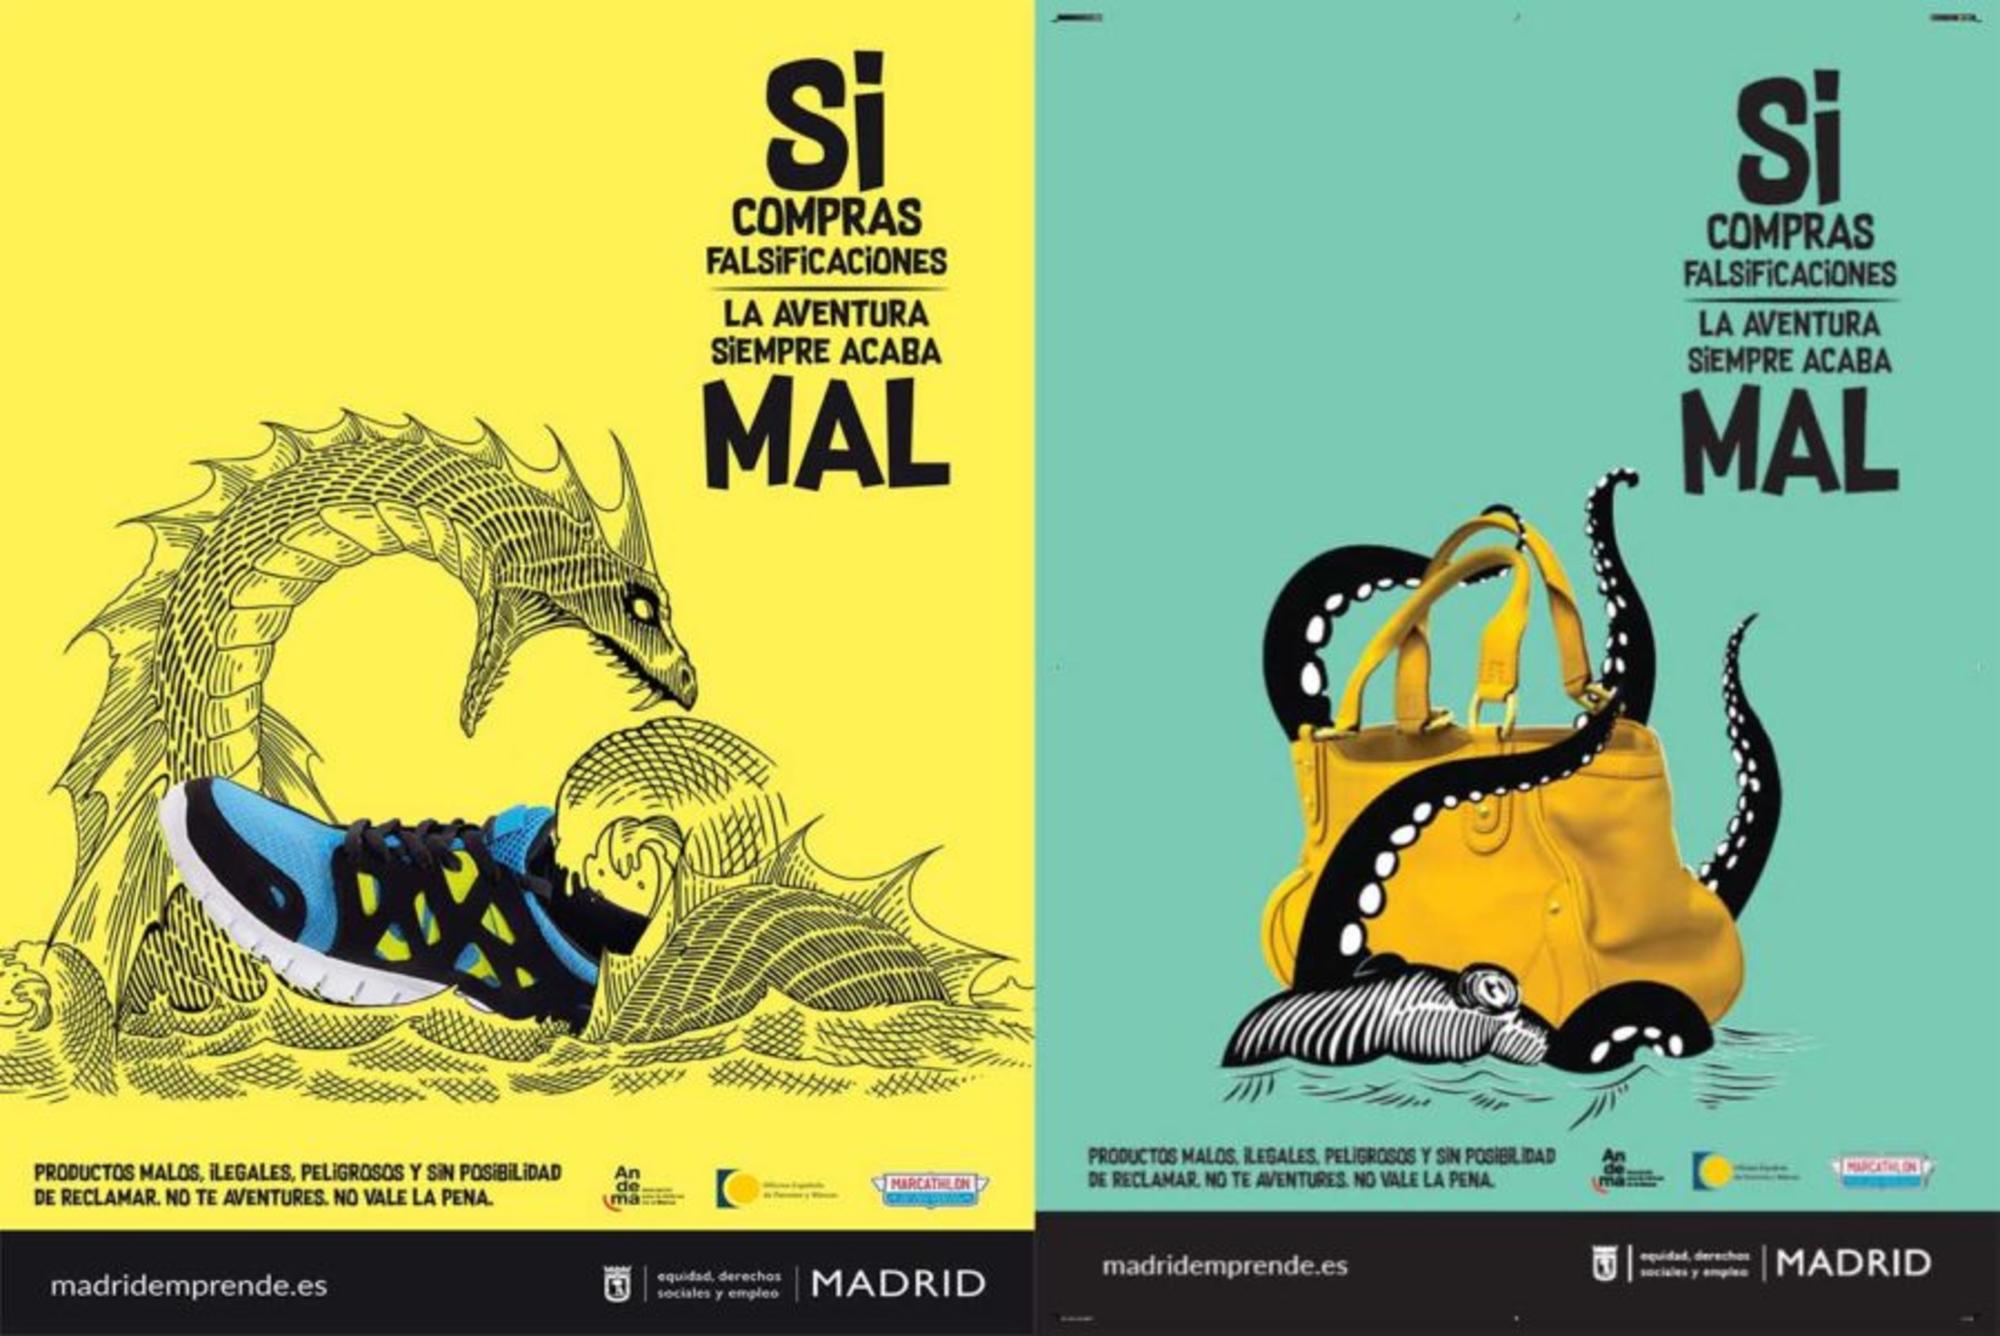 Campaña Falsificaciones Ayuntamiento de Madrid